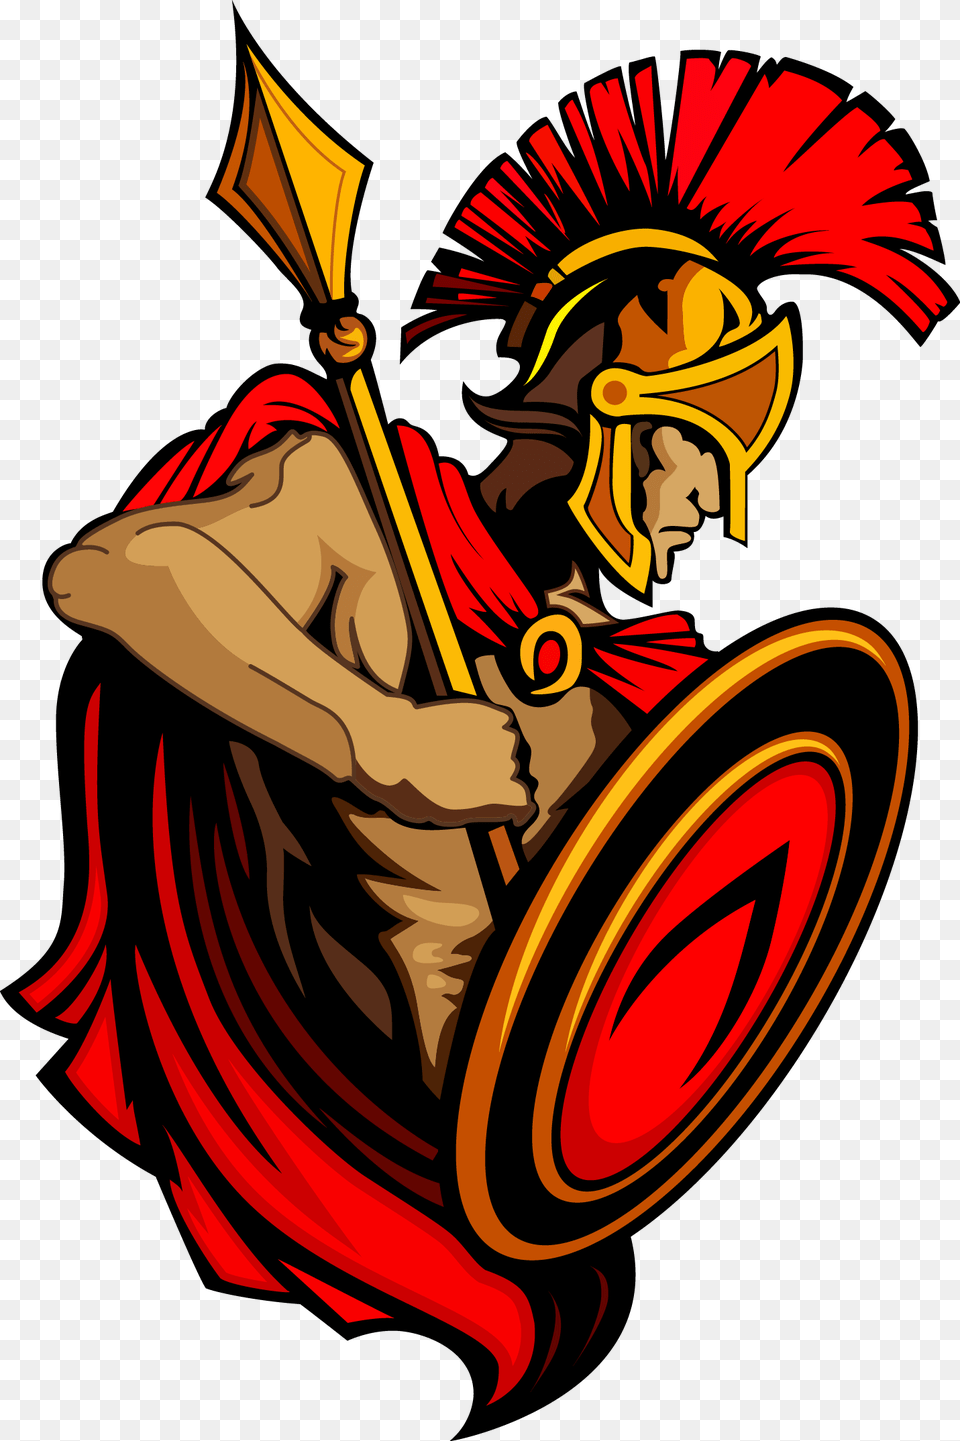 Spartan Army Ancient Greece Trojan War Clip Art Soldados De Grecia Antigua, Dynamite, Weapon, Face, Head Free Png